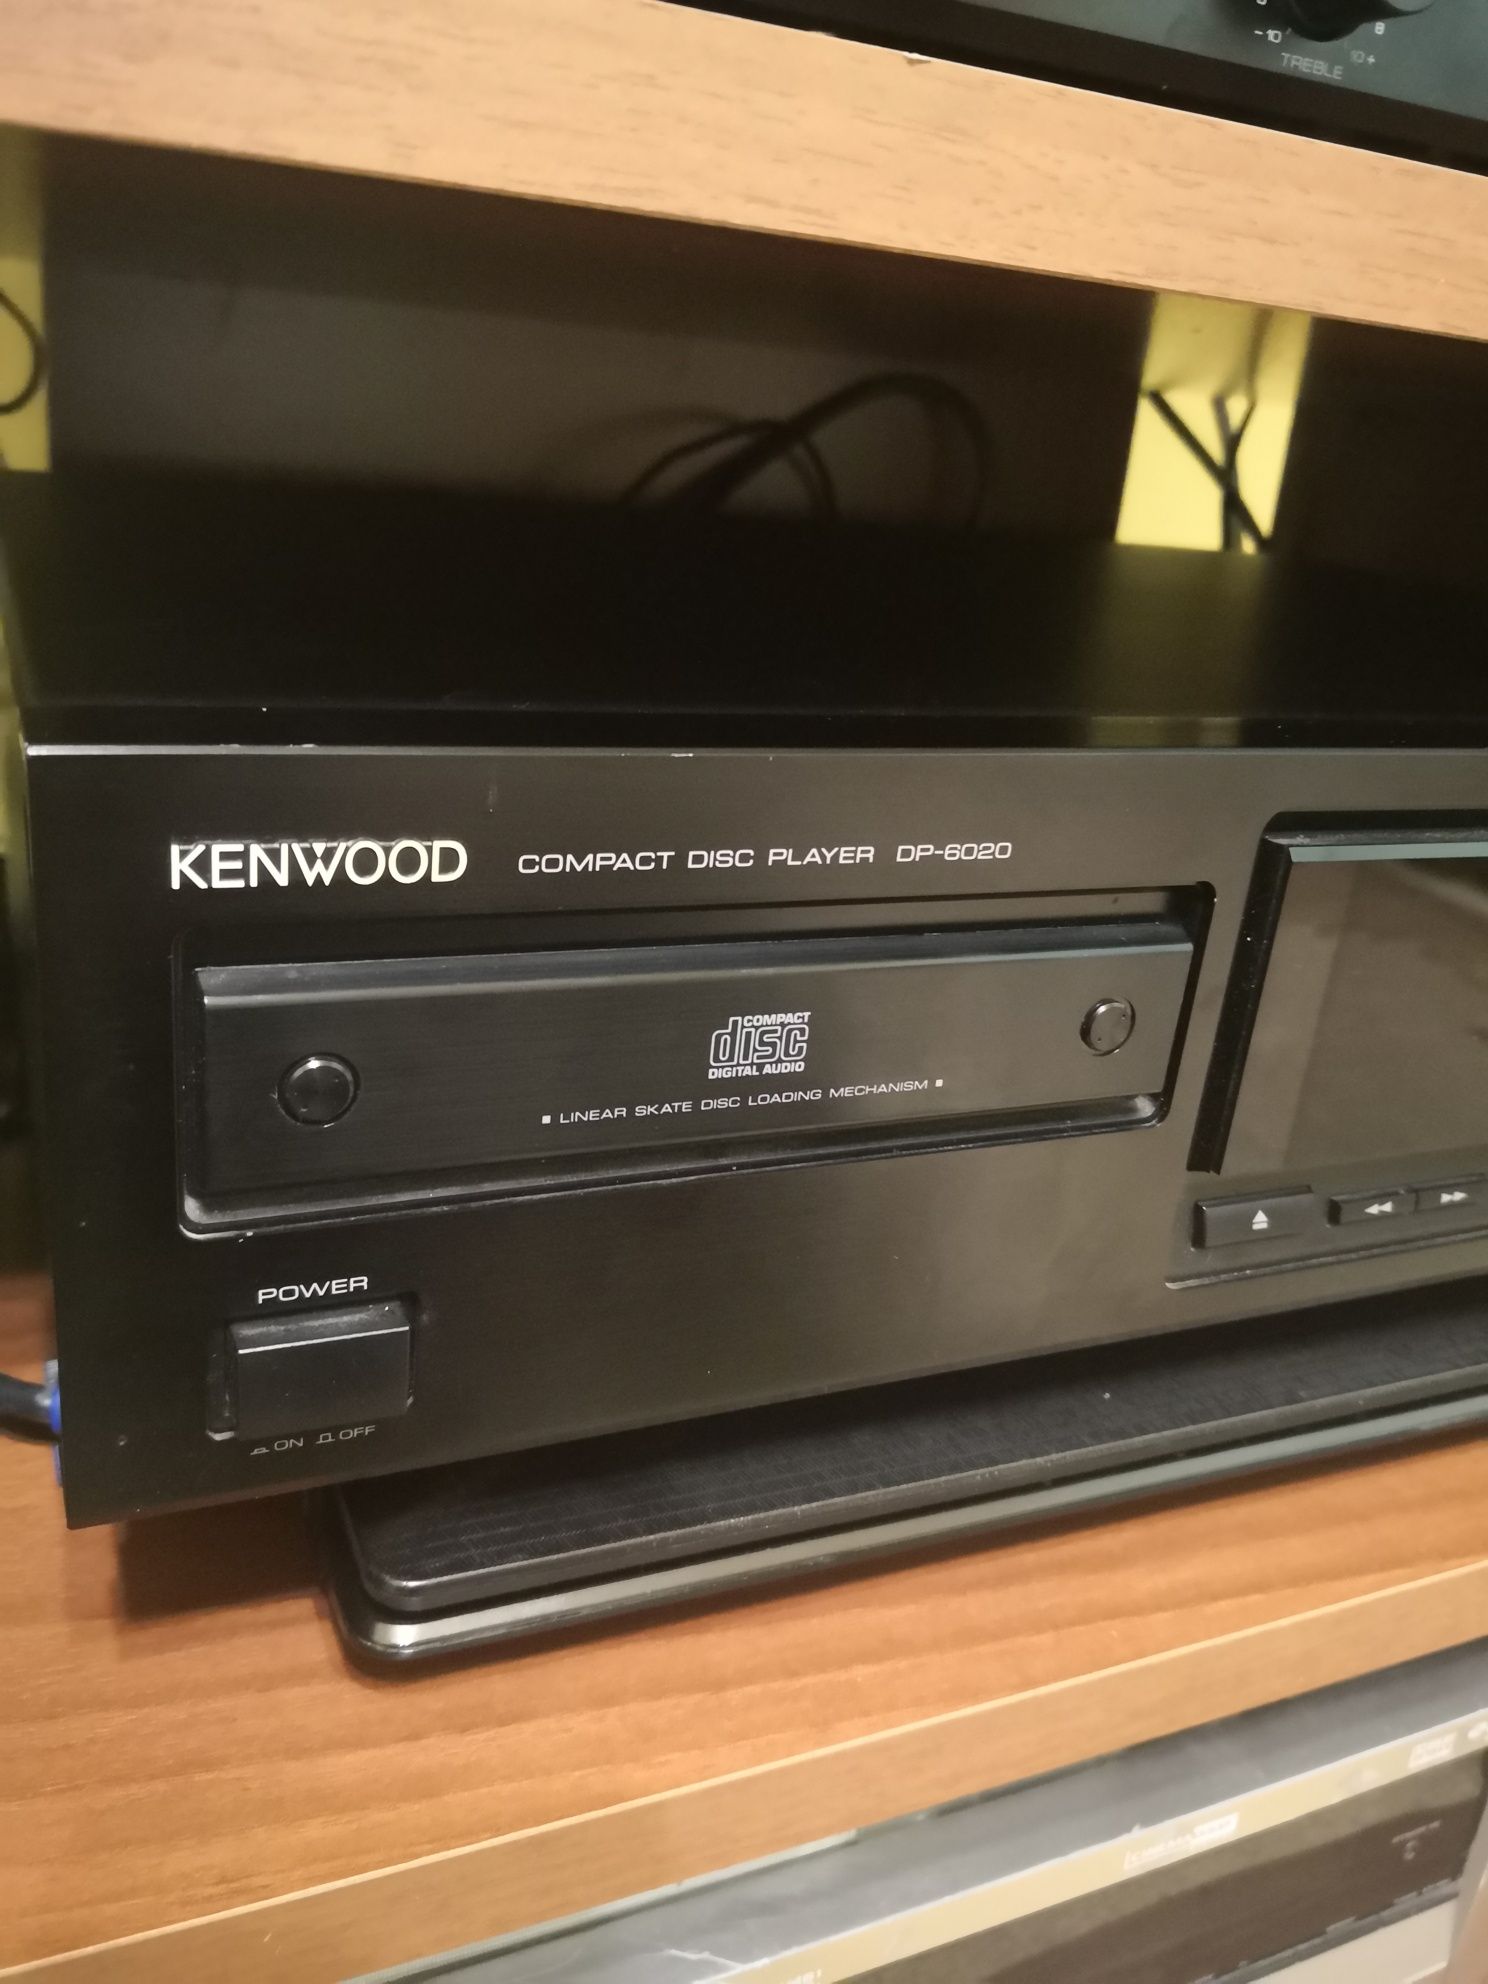 Kenwood dp-6020 CD